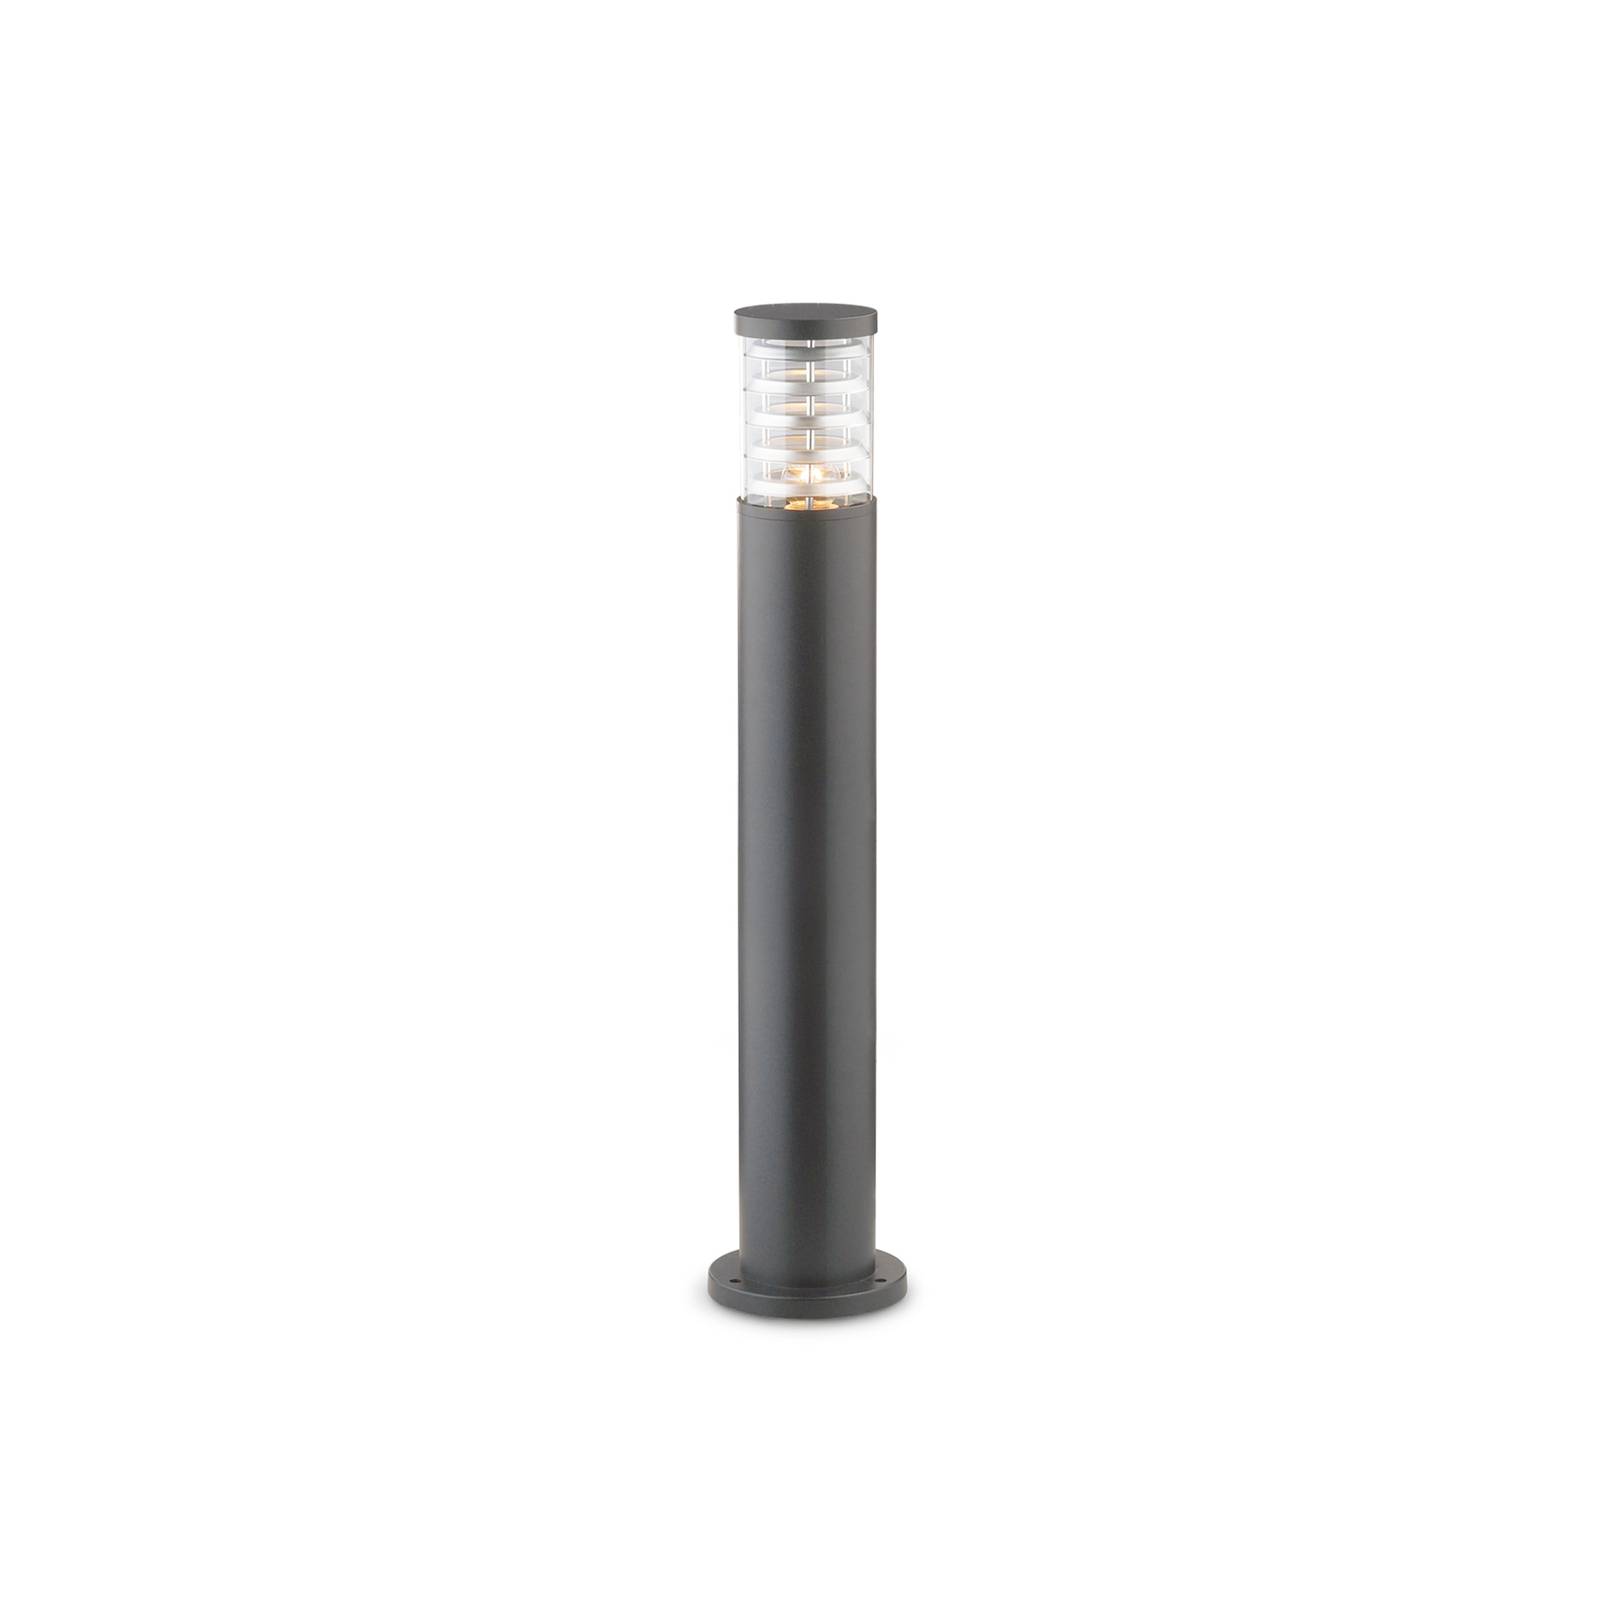 Ideallux ideal lux útvilágítás tronco antracit alumínium magasság 80.5 cm